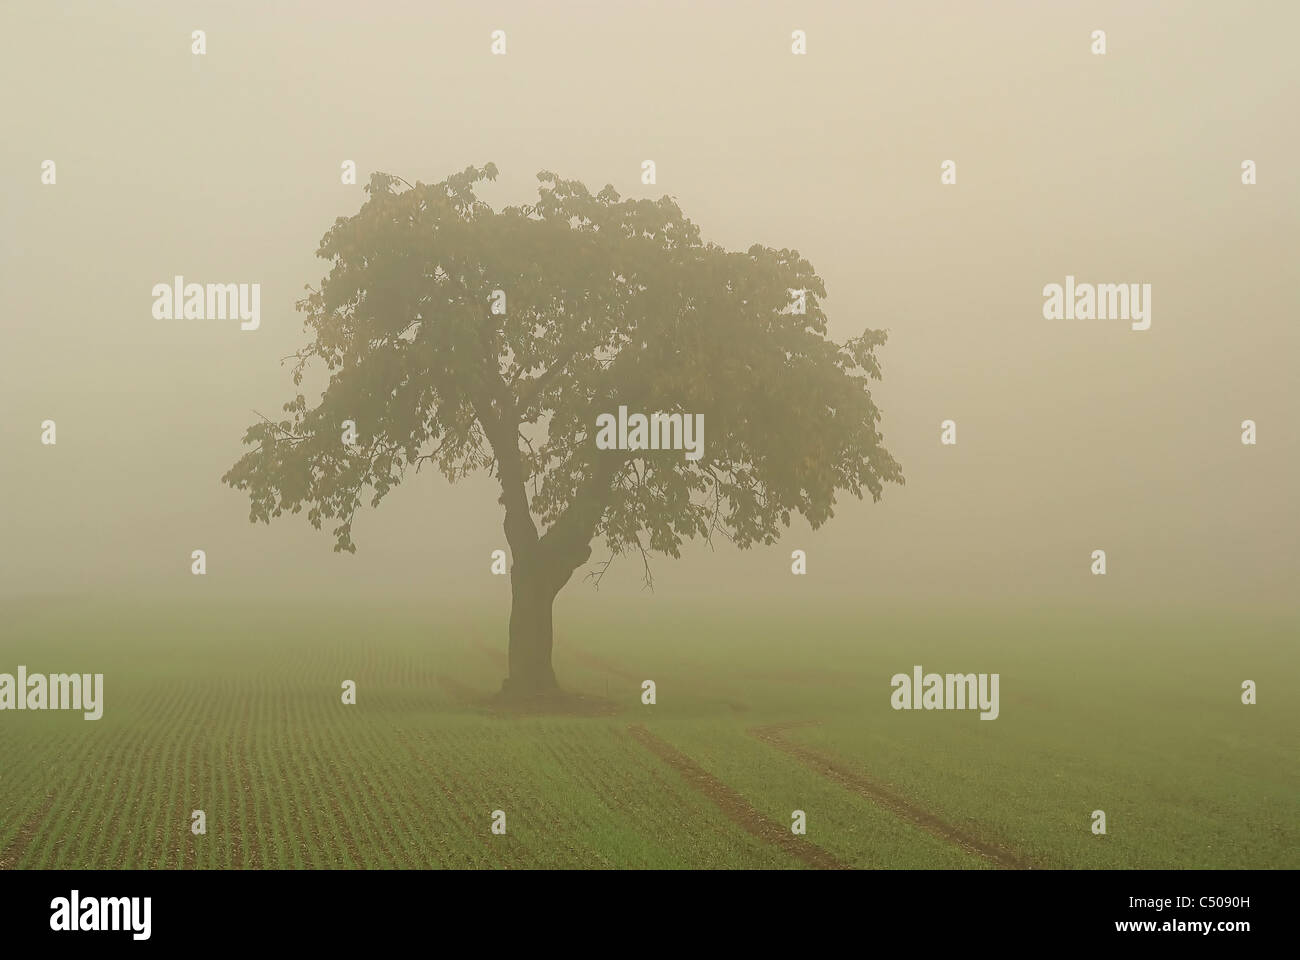 Baum Im Nebel - Baum im Nebel 01 Stockfoto